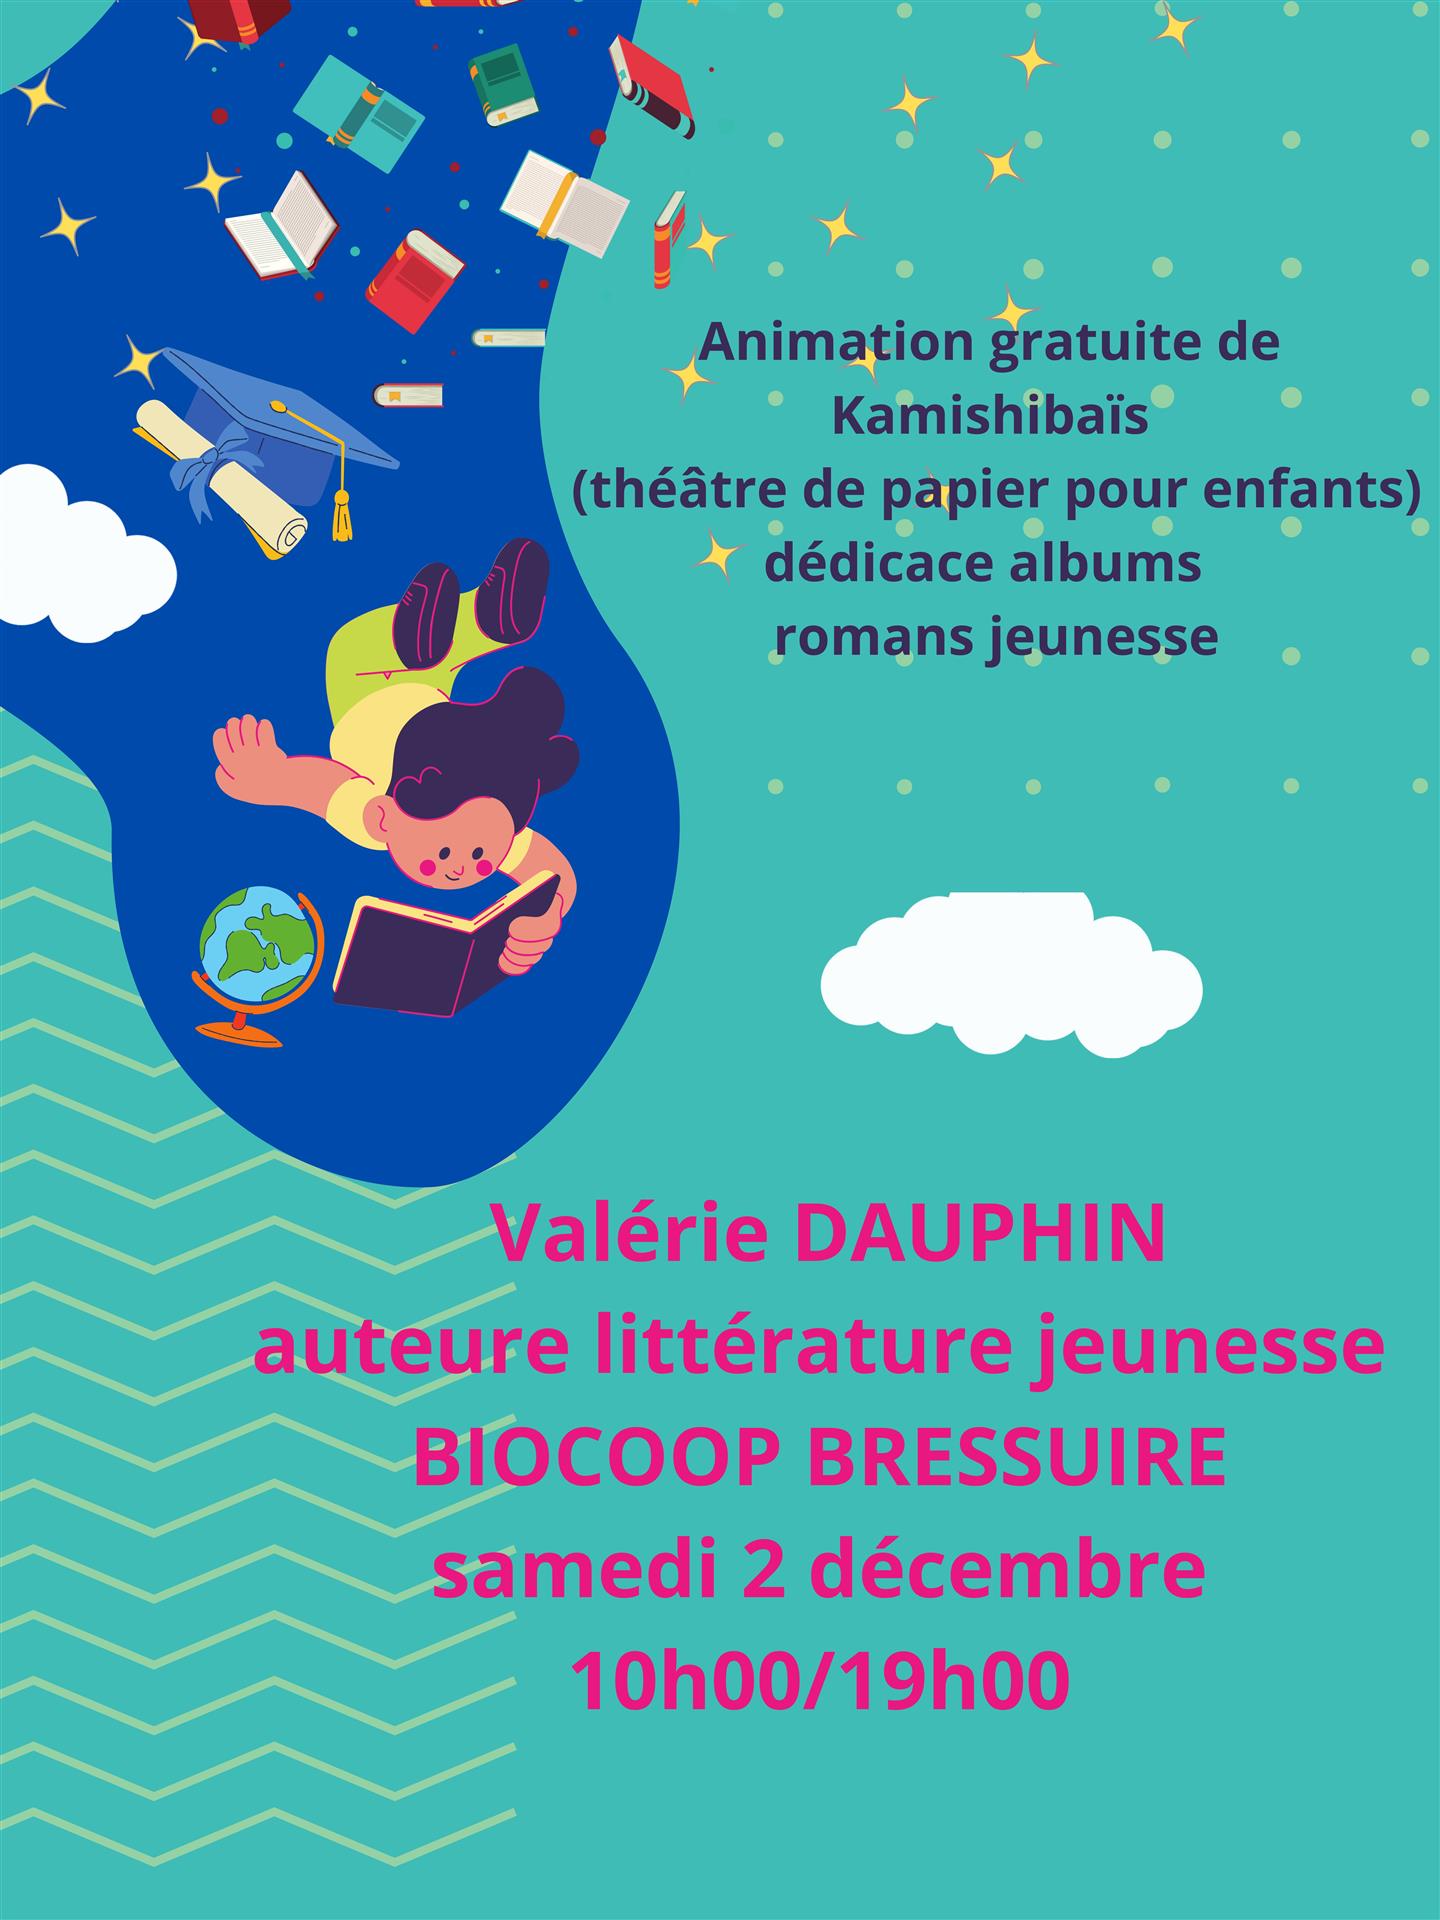 Dédicace livre jeunesse par Valérie Dauphin